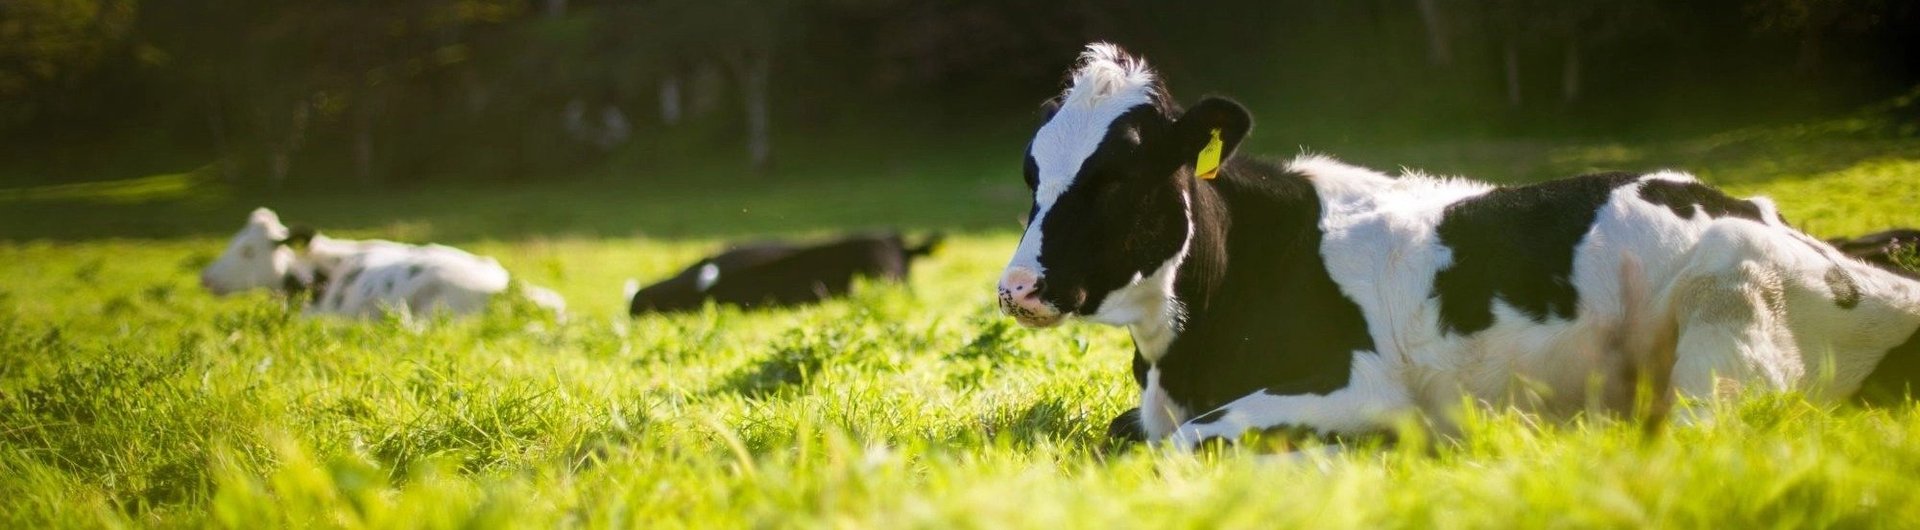 Kor och kalvar i mjölkindustrin